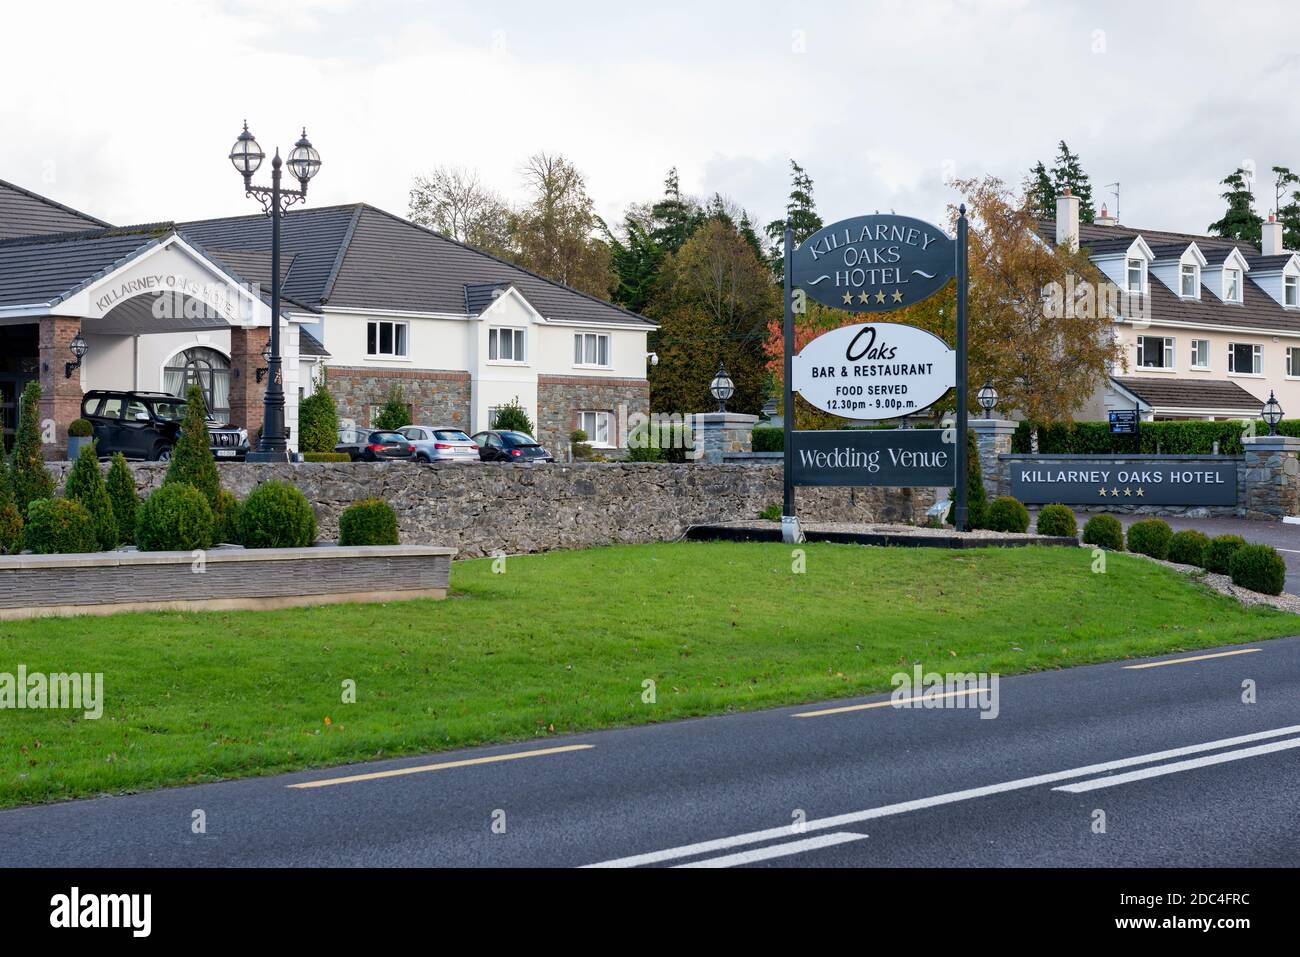 The Killarney Oaks Hotel and wedding venue in Killarney, County Kerry, Ireland Stock Photo